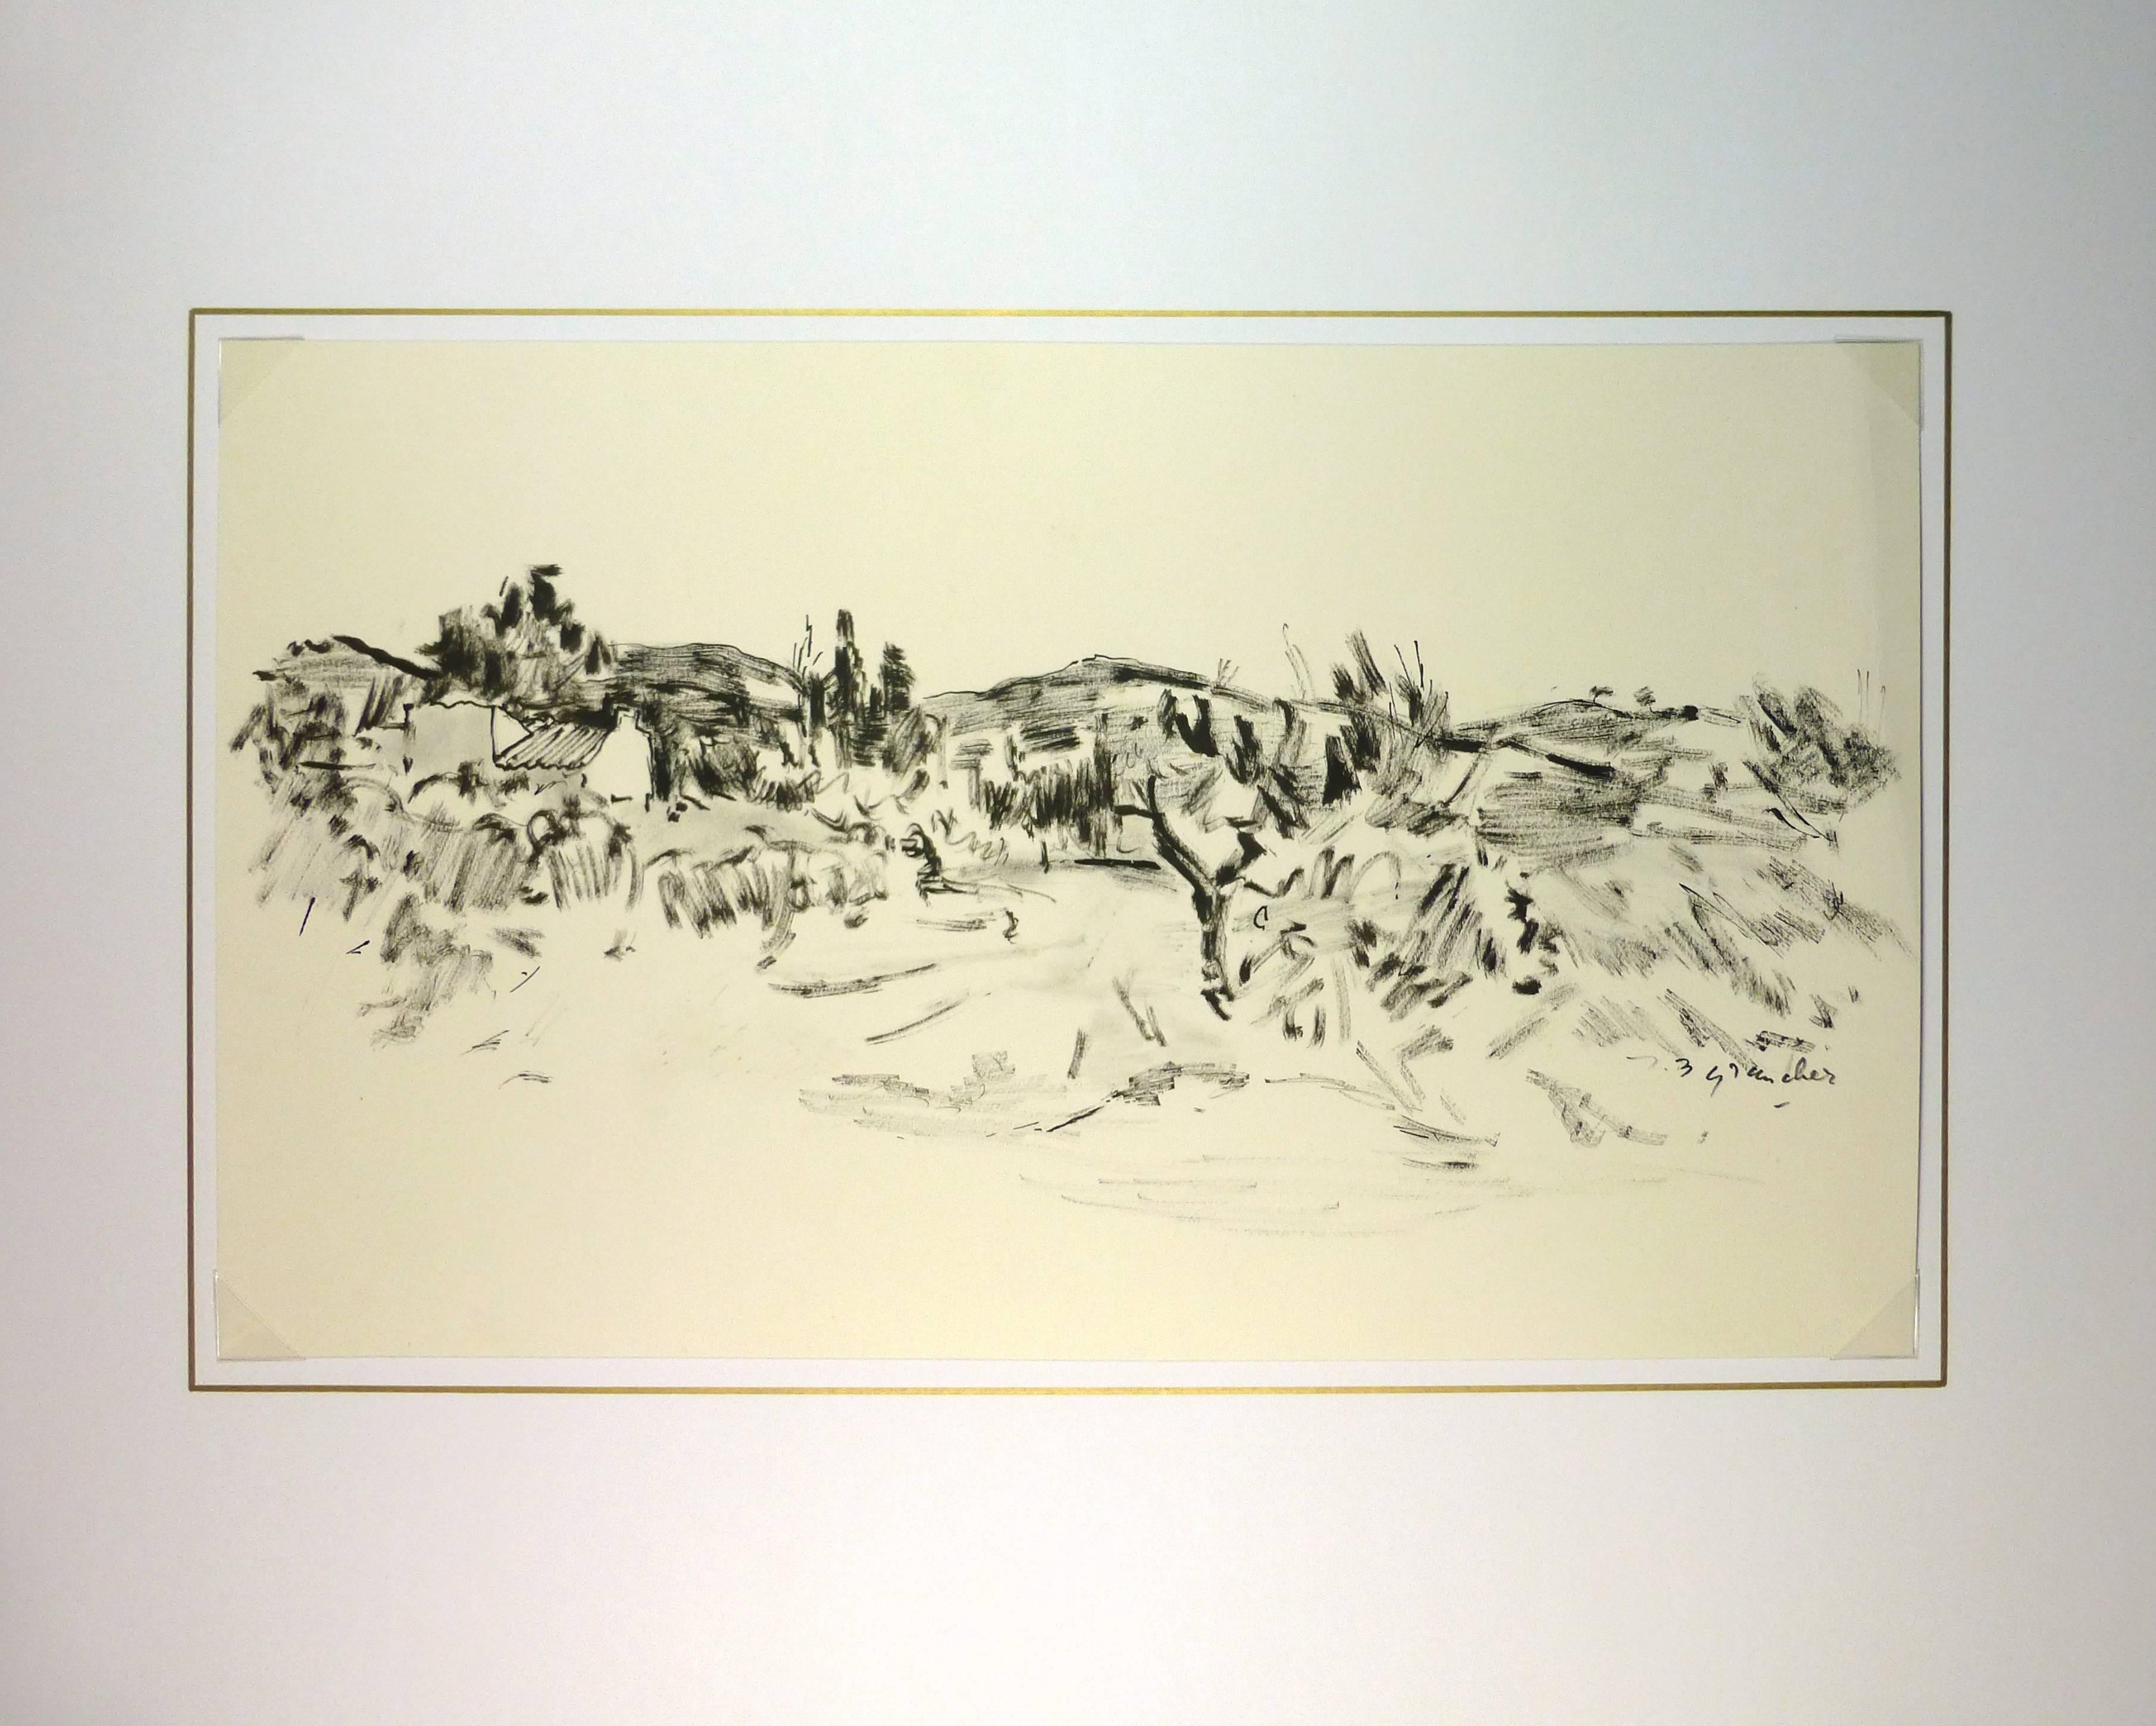 Provençal Scene in Ink - Art by Jean-Baptiste Grancher